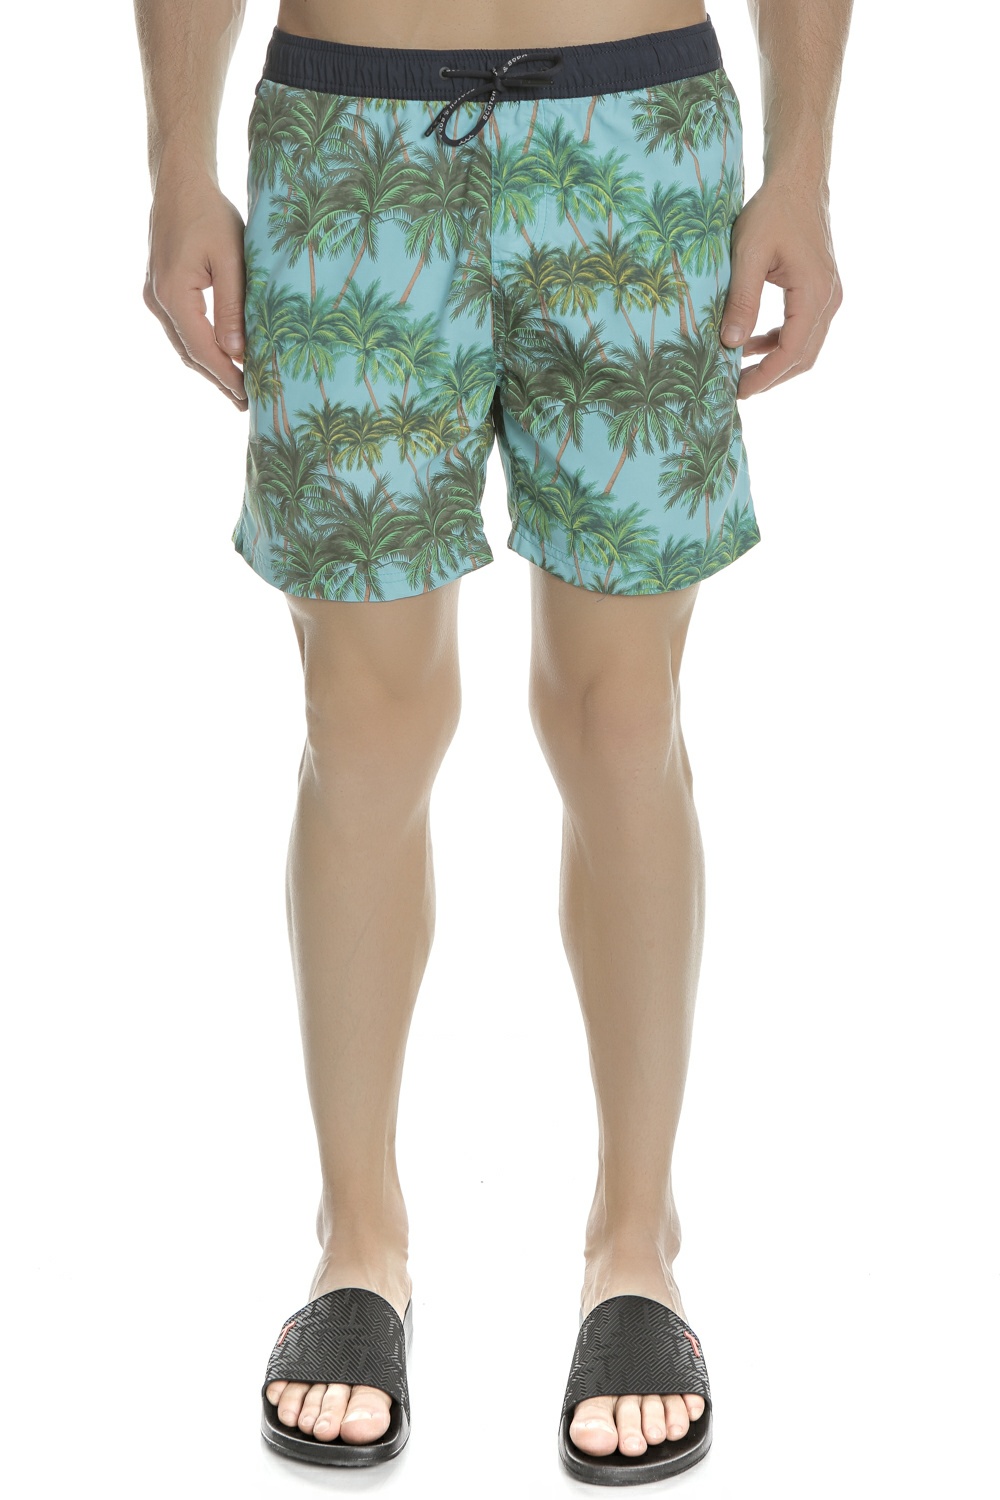 Ανδρικά/Ρούχα/Μαγιό/Βερμούδες SCOTCH & SODA - Ανδρικό μαγιό βερμούδα Classic swimshort πράσινο